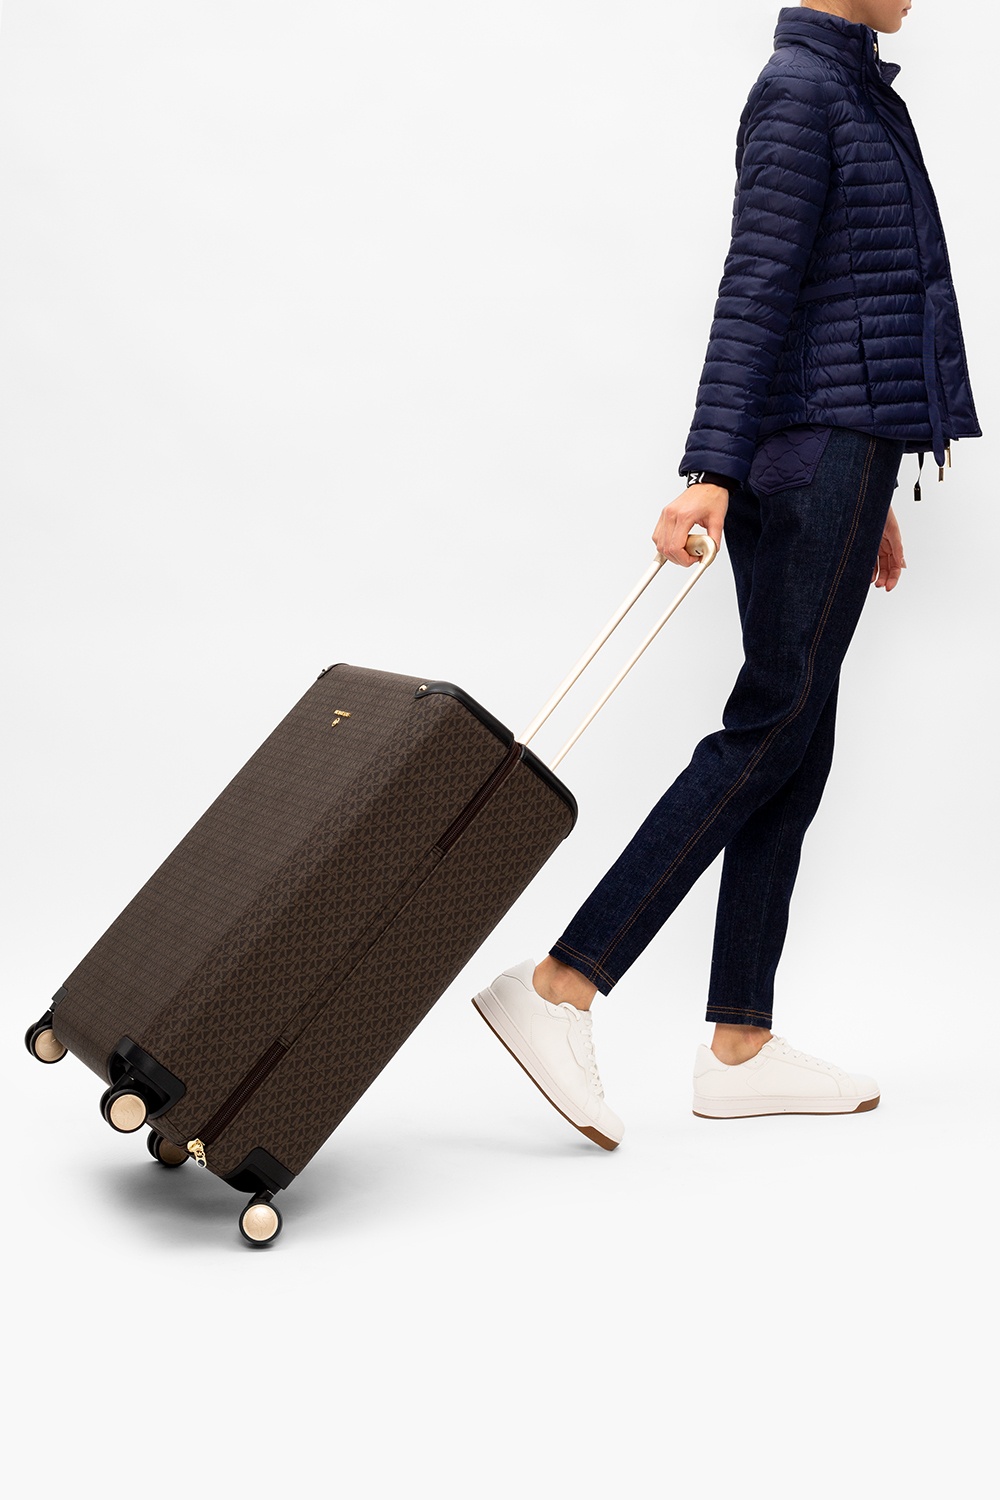 Michael Kors Jet Set Travel XL Duffle Weekender Luggage Bag Powder Blush  Pink MK  eBay